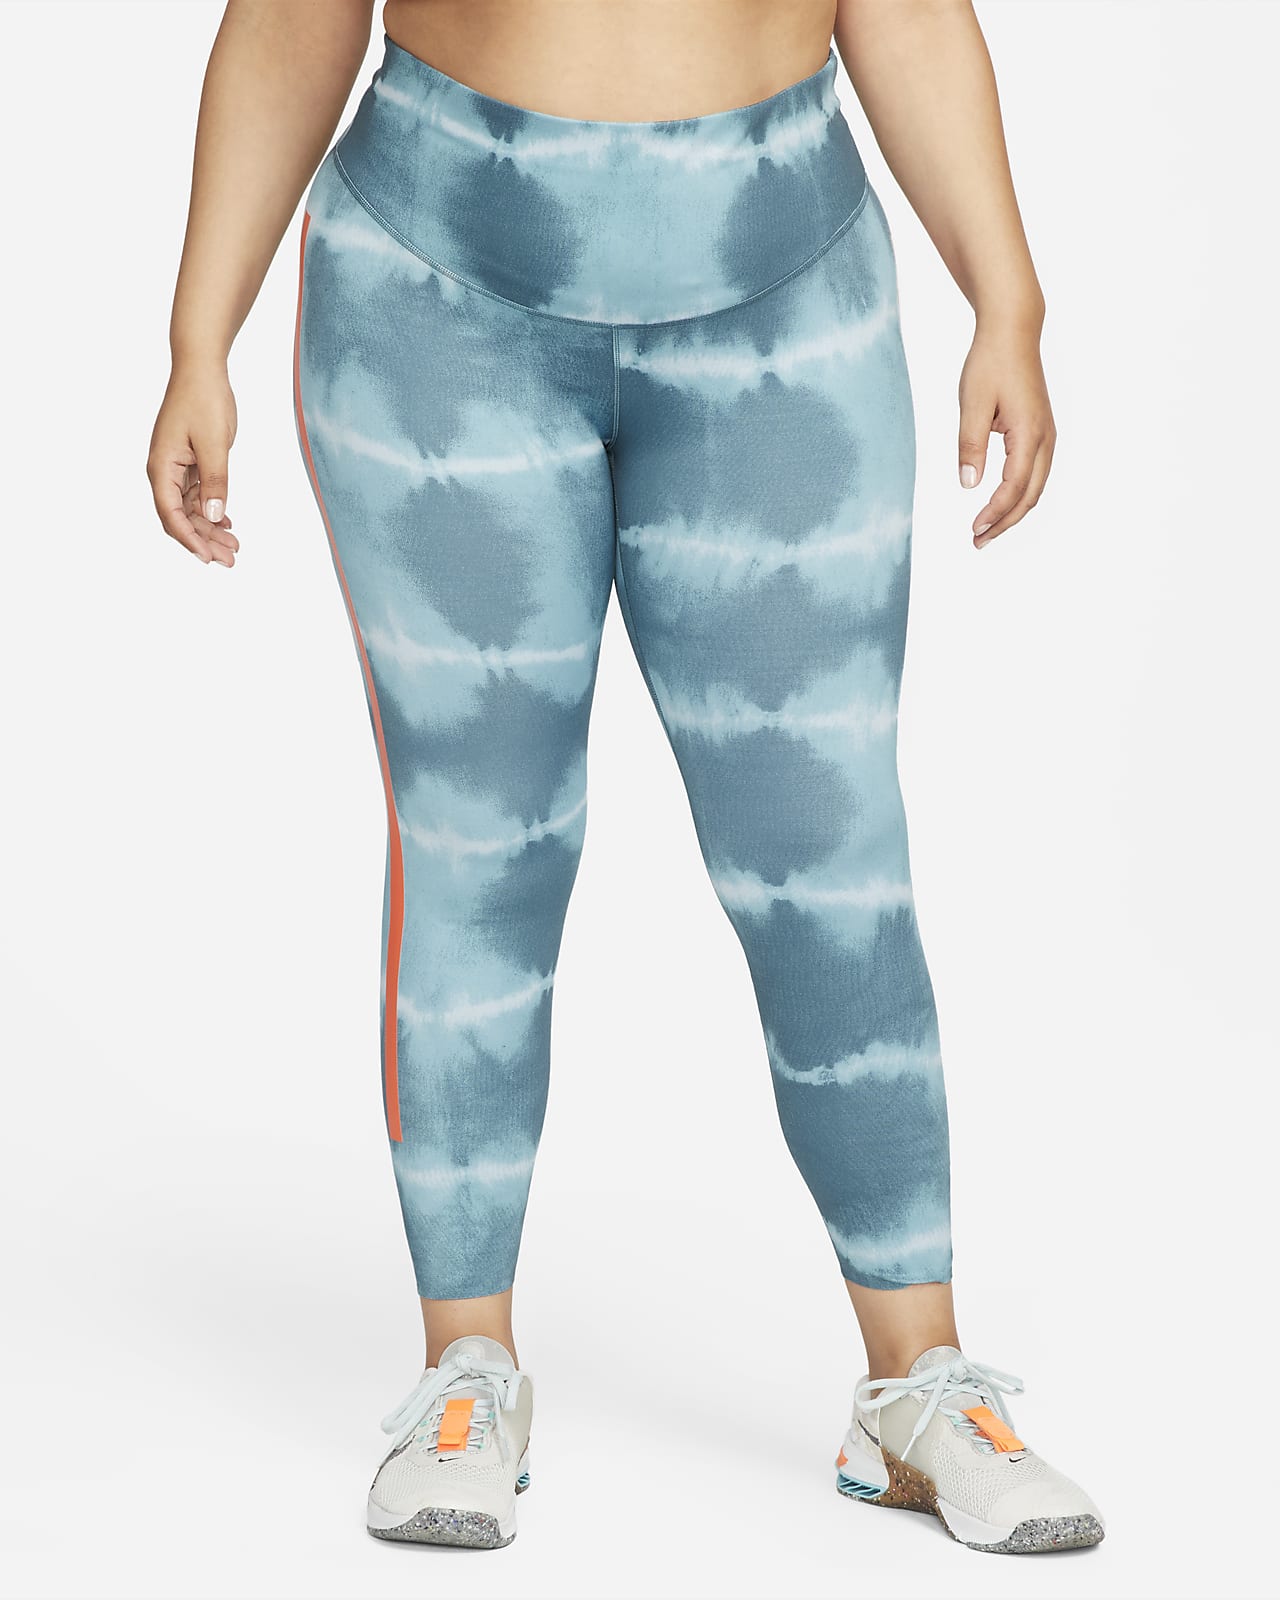 Nike Dri-FIT One Luxe Trainings-Leggings mit halbhohem Bund und Print für Damen (große Größe)